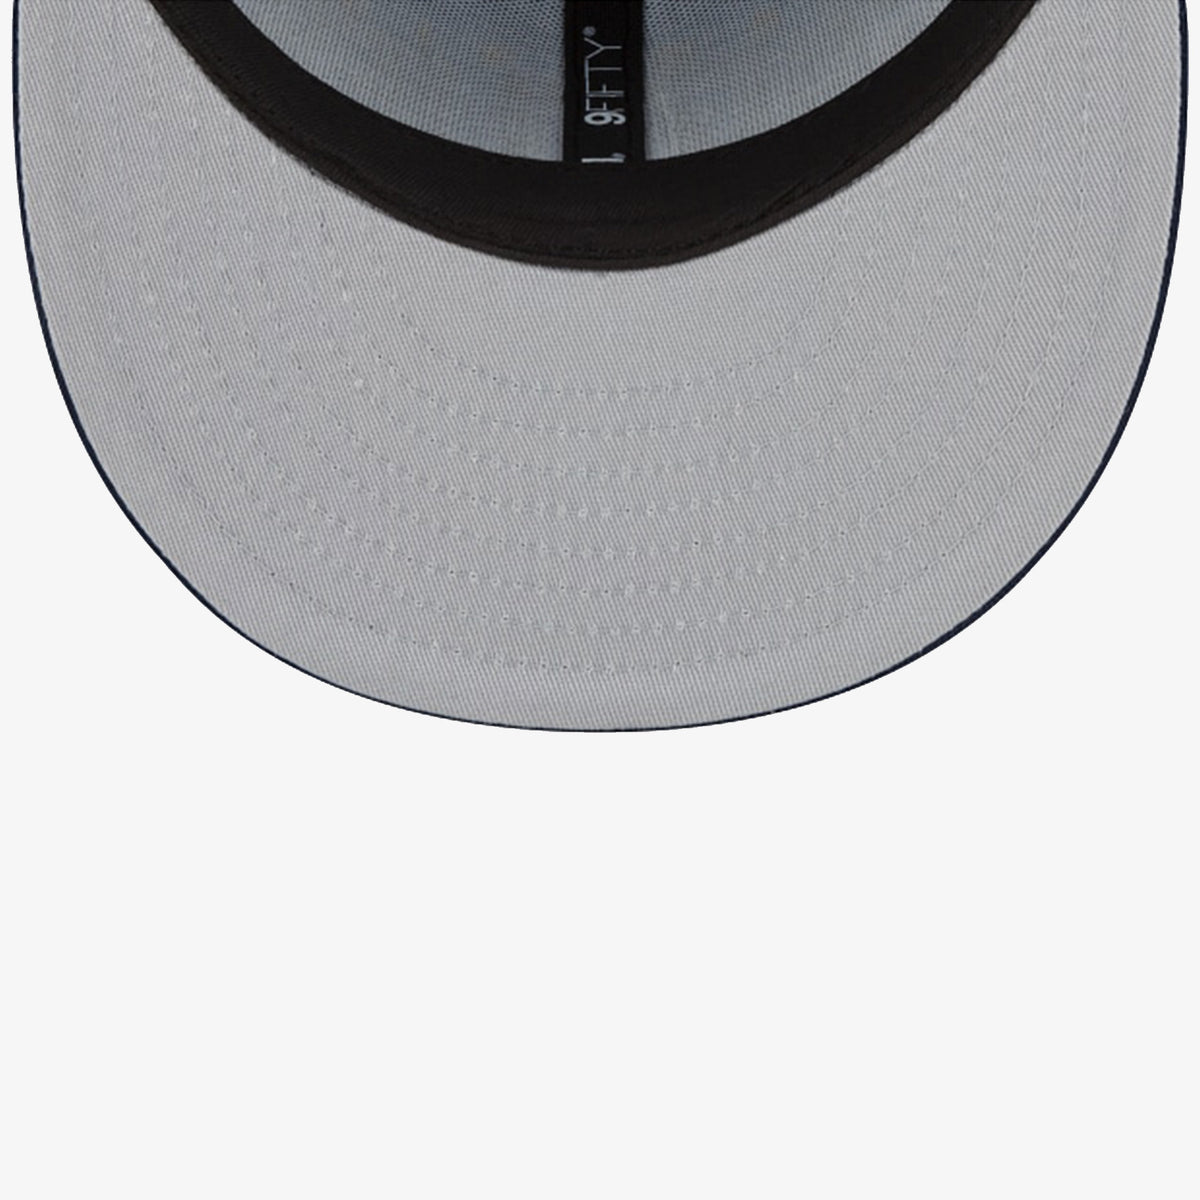 Memphis Grizzlies New Era 9fifty Snapback black/blue hat cap